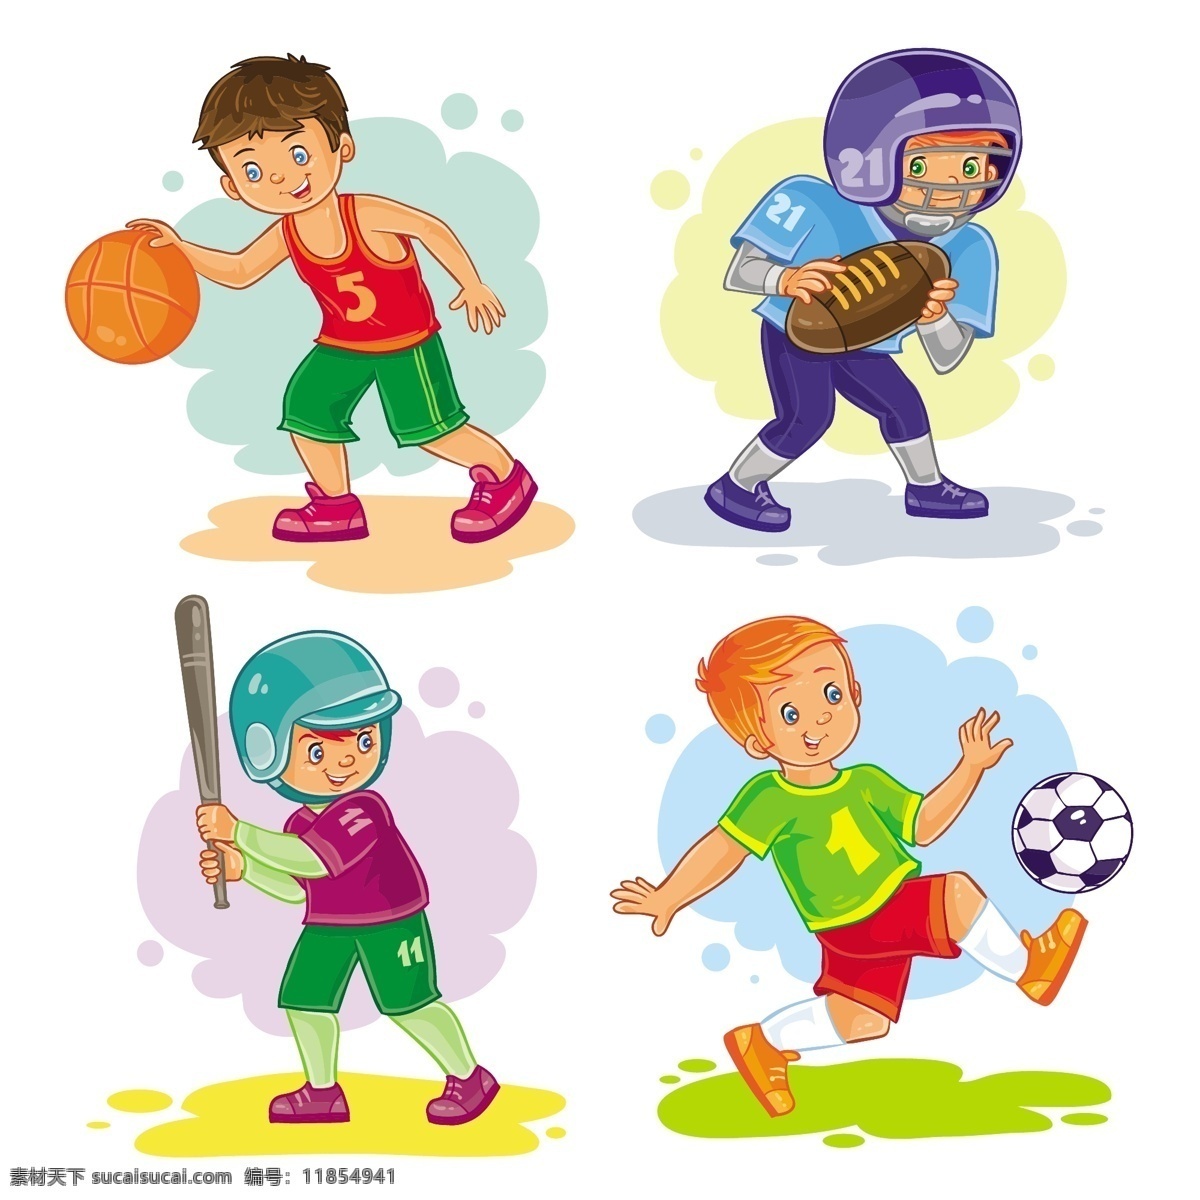 可爱 卡通 男孩 打球 运动 矢量 打篮球 橄榄球 棒球 足球 休闲 学生 儿童 孩子 插画 动漫动画 动漫人物